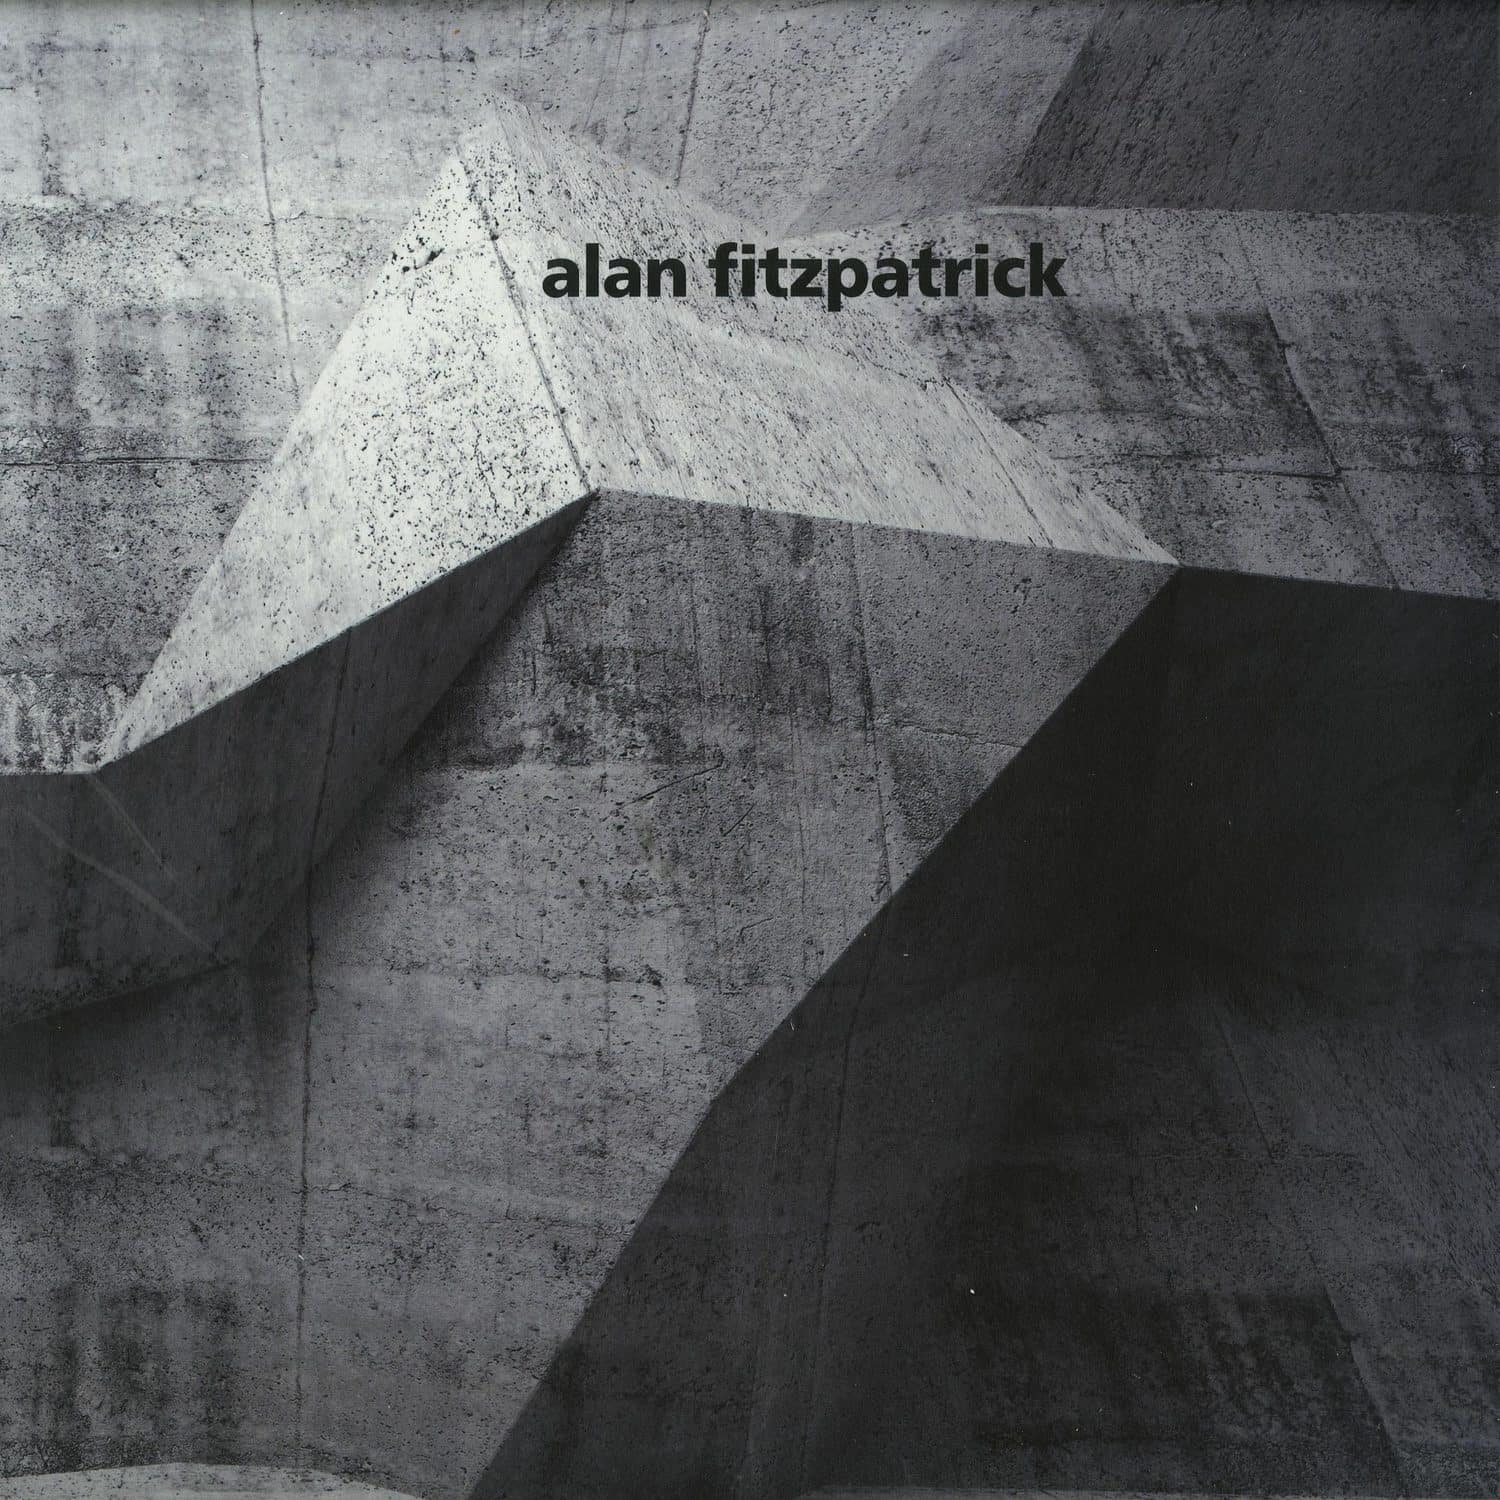 Alan Fitzpatrick - A SUBTLE CHANGE